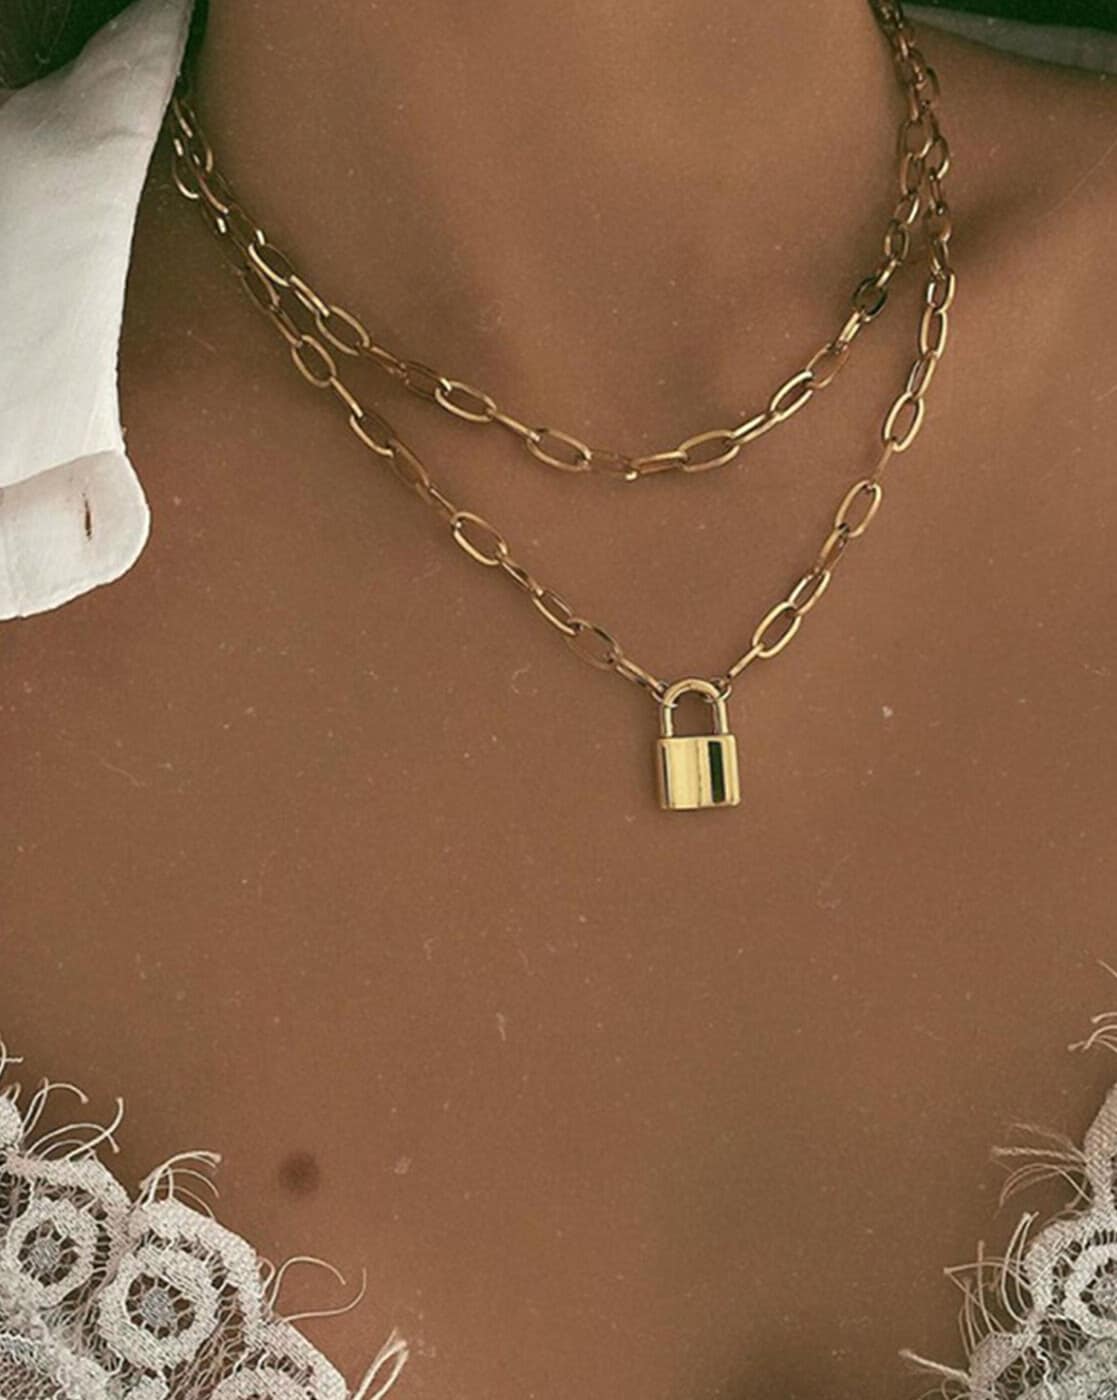 Gold Lock Necklace, Gold Padlock Necklace, Lock Jewelry, Padlock Jewelry,  Lock and Key, 14k Gold Filled Necklace, Dainty Gold Necklace - Etsy Polska